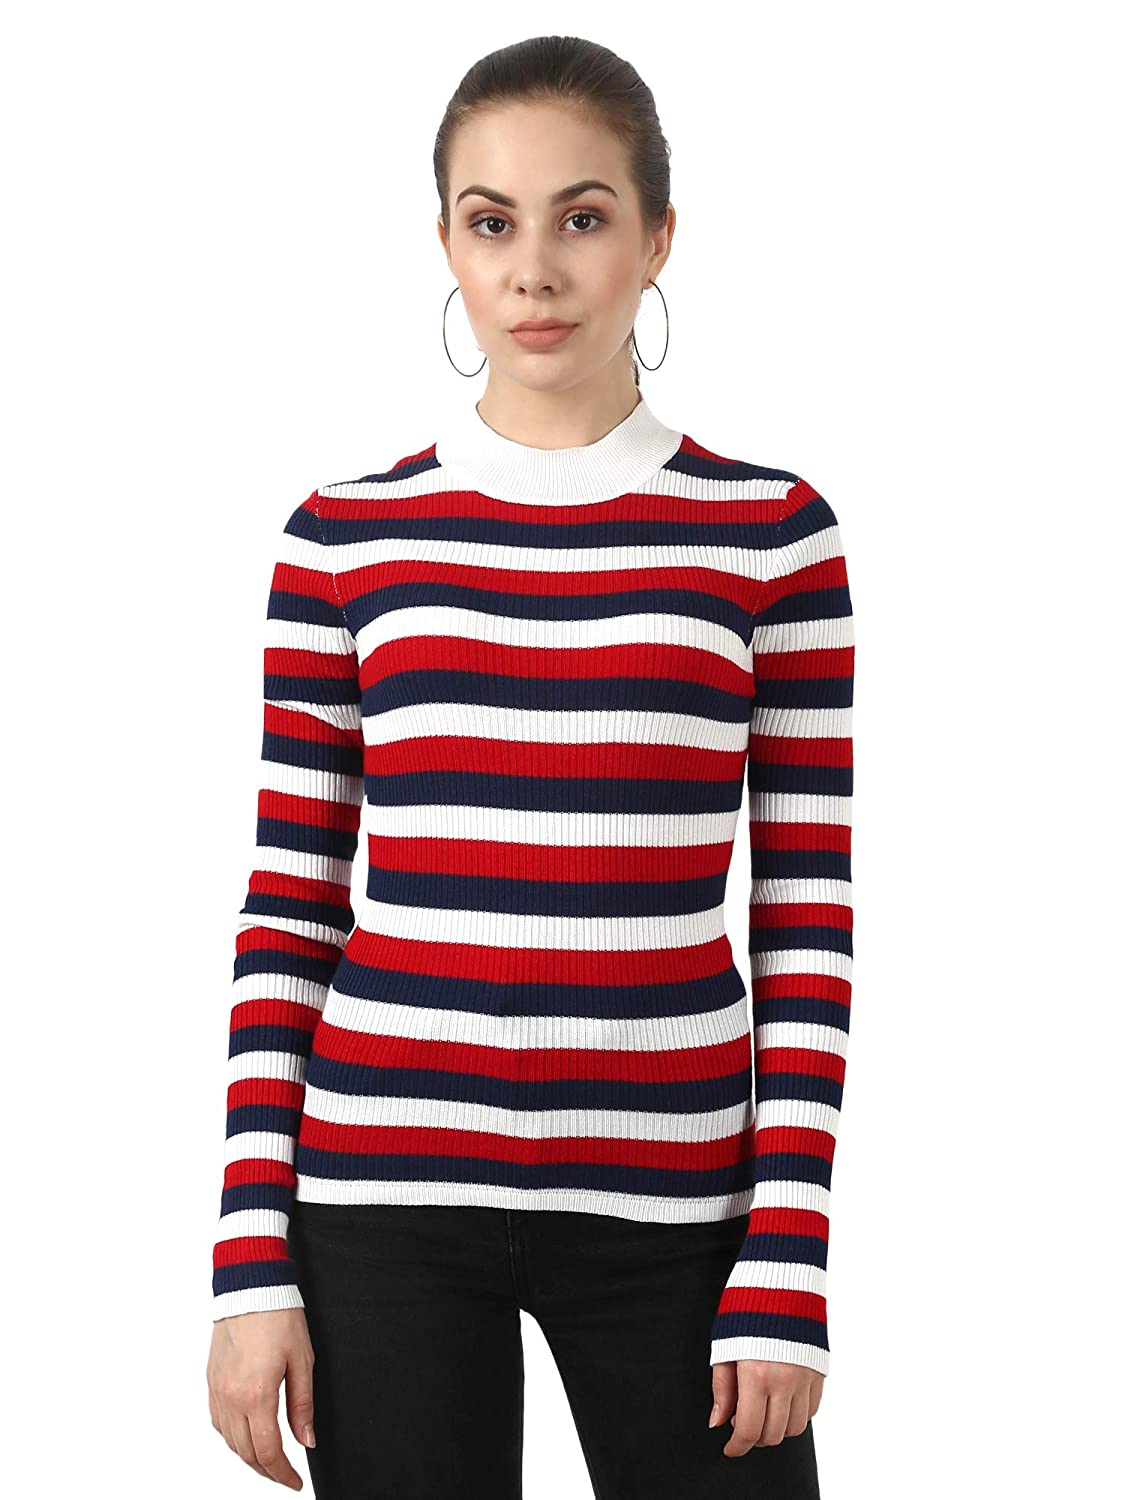 Model wearing a striped sweater